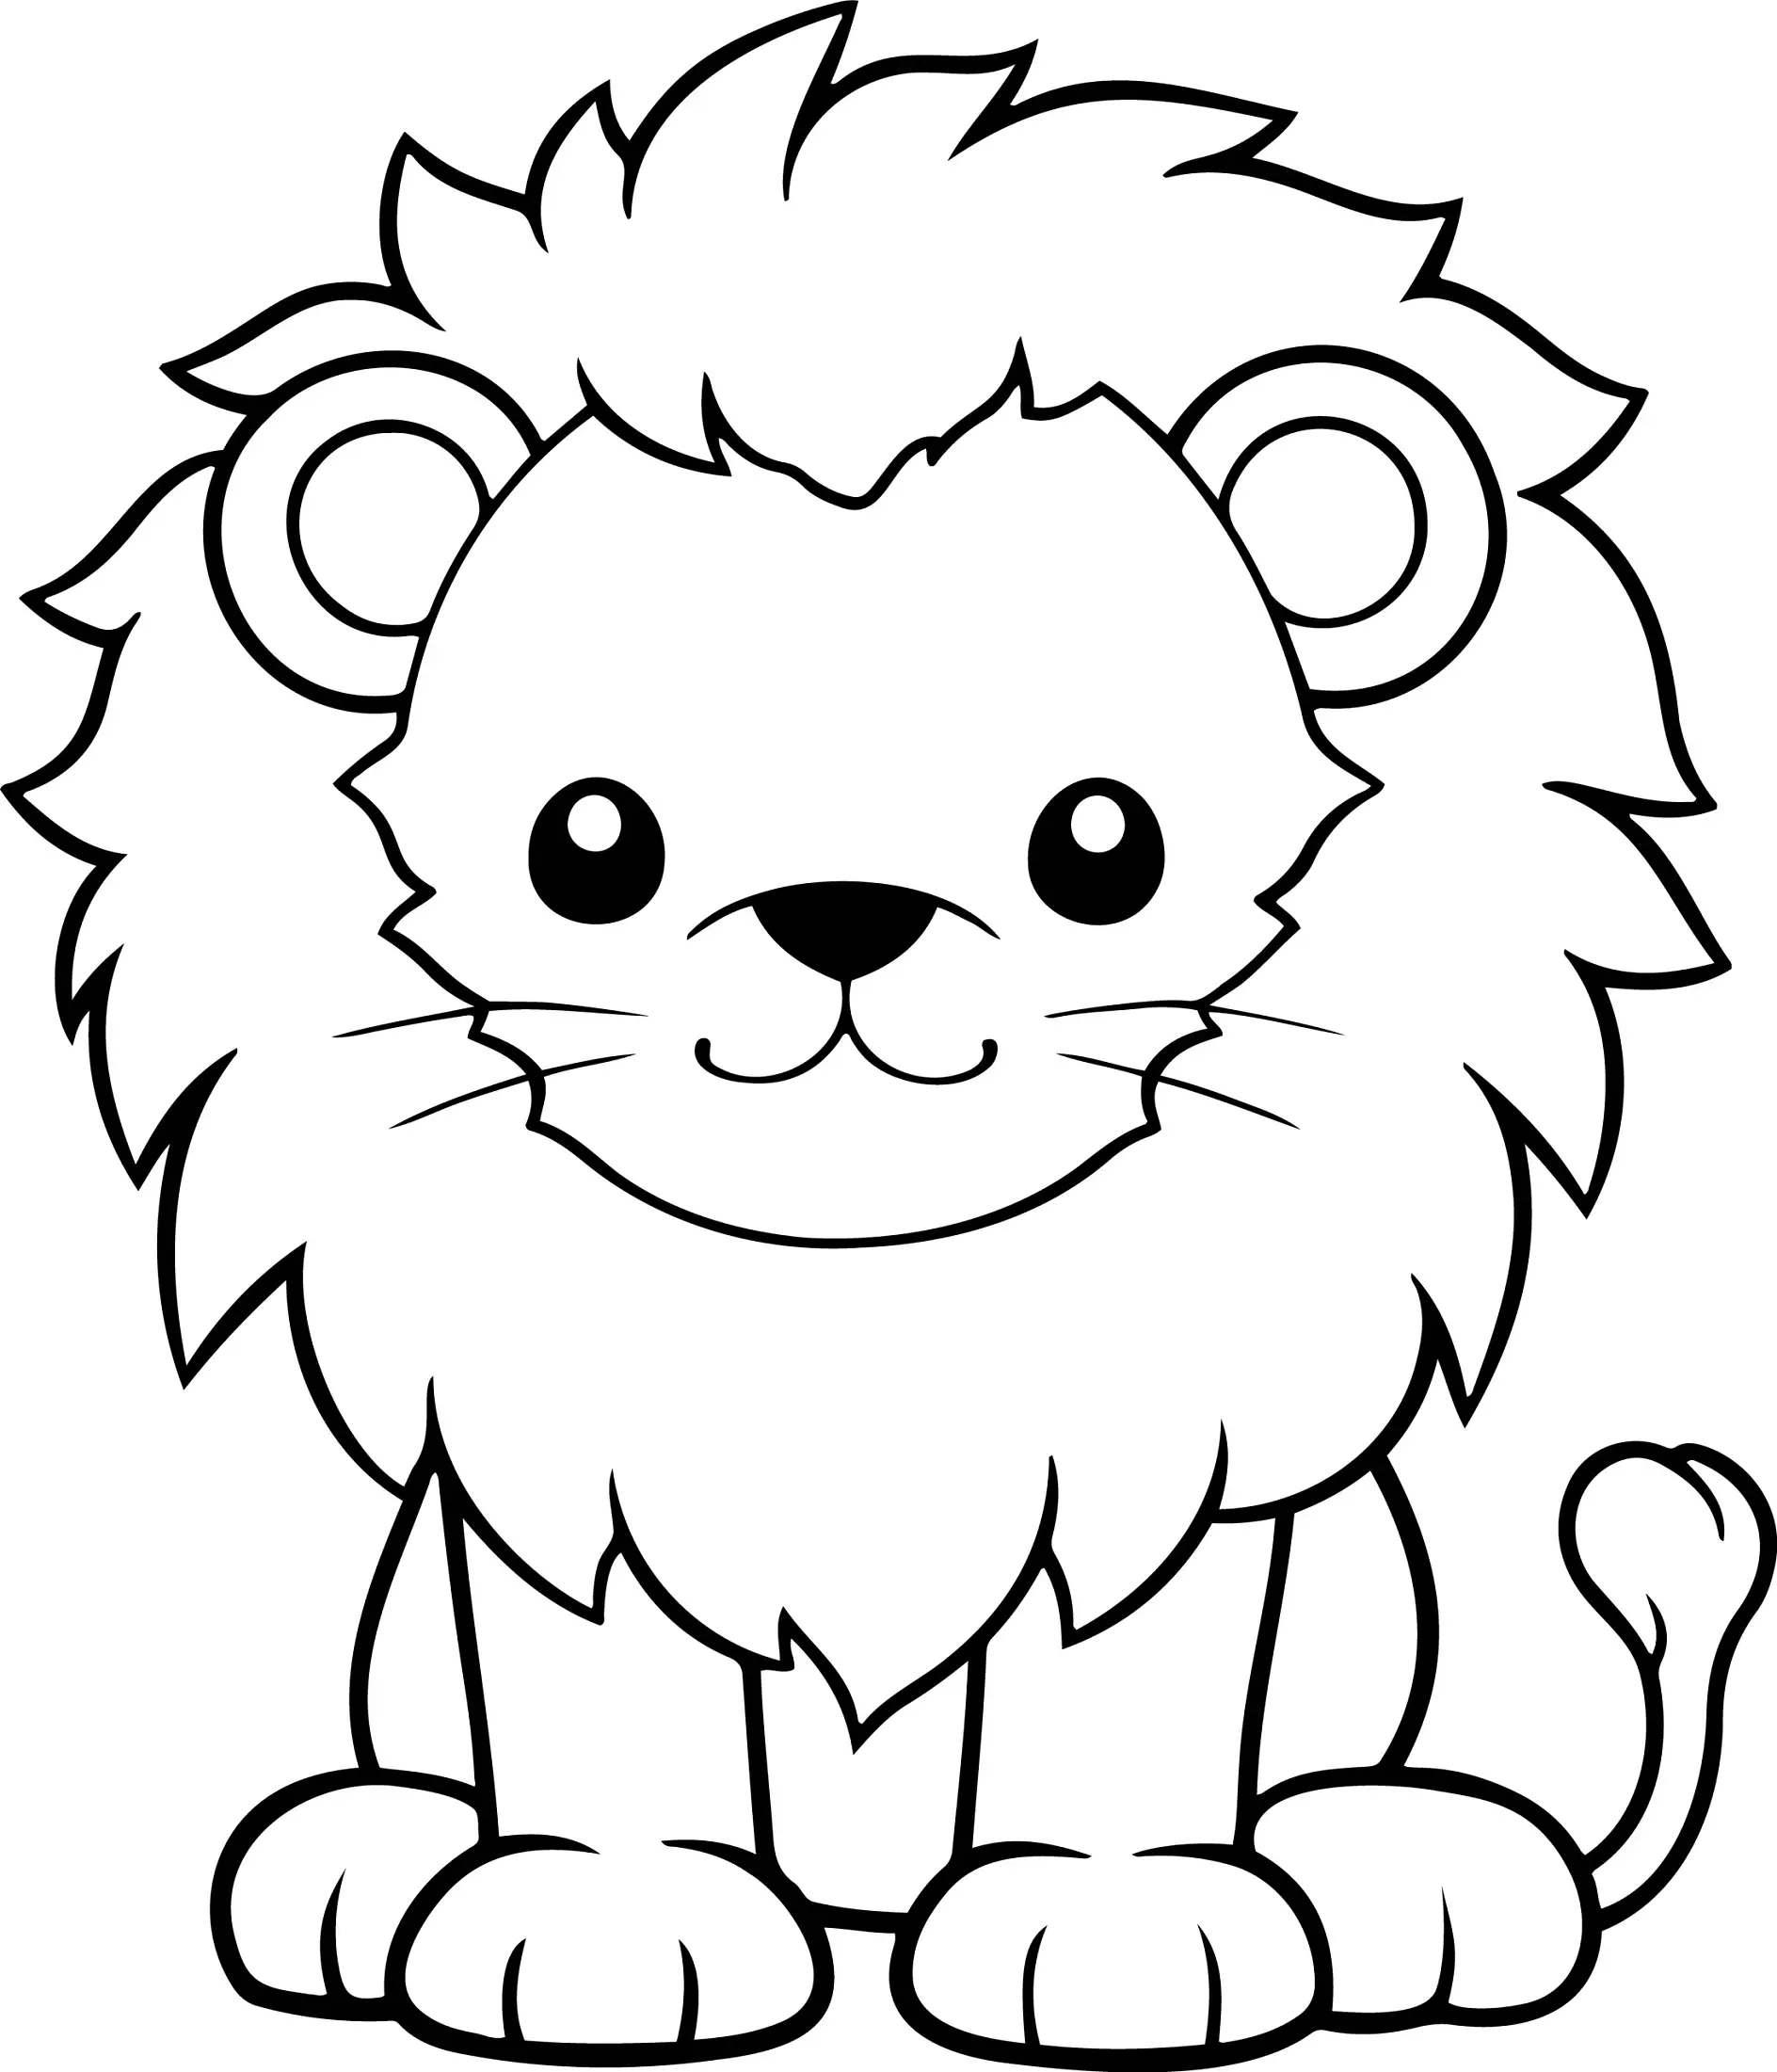 Ausmalbild Löwe große Mähne sitzendLion vector illustration. Black and white outline Lion coloring book or page for children